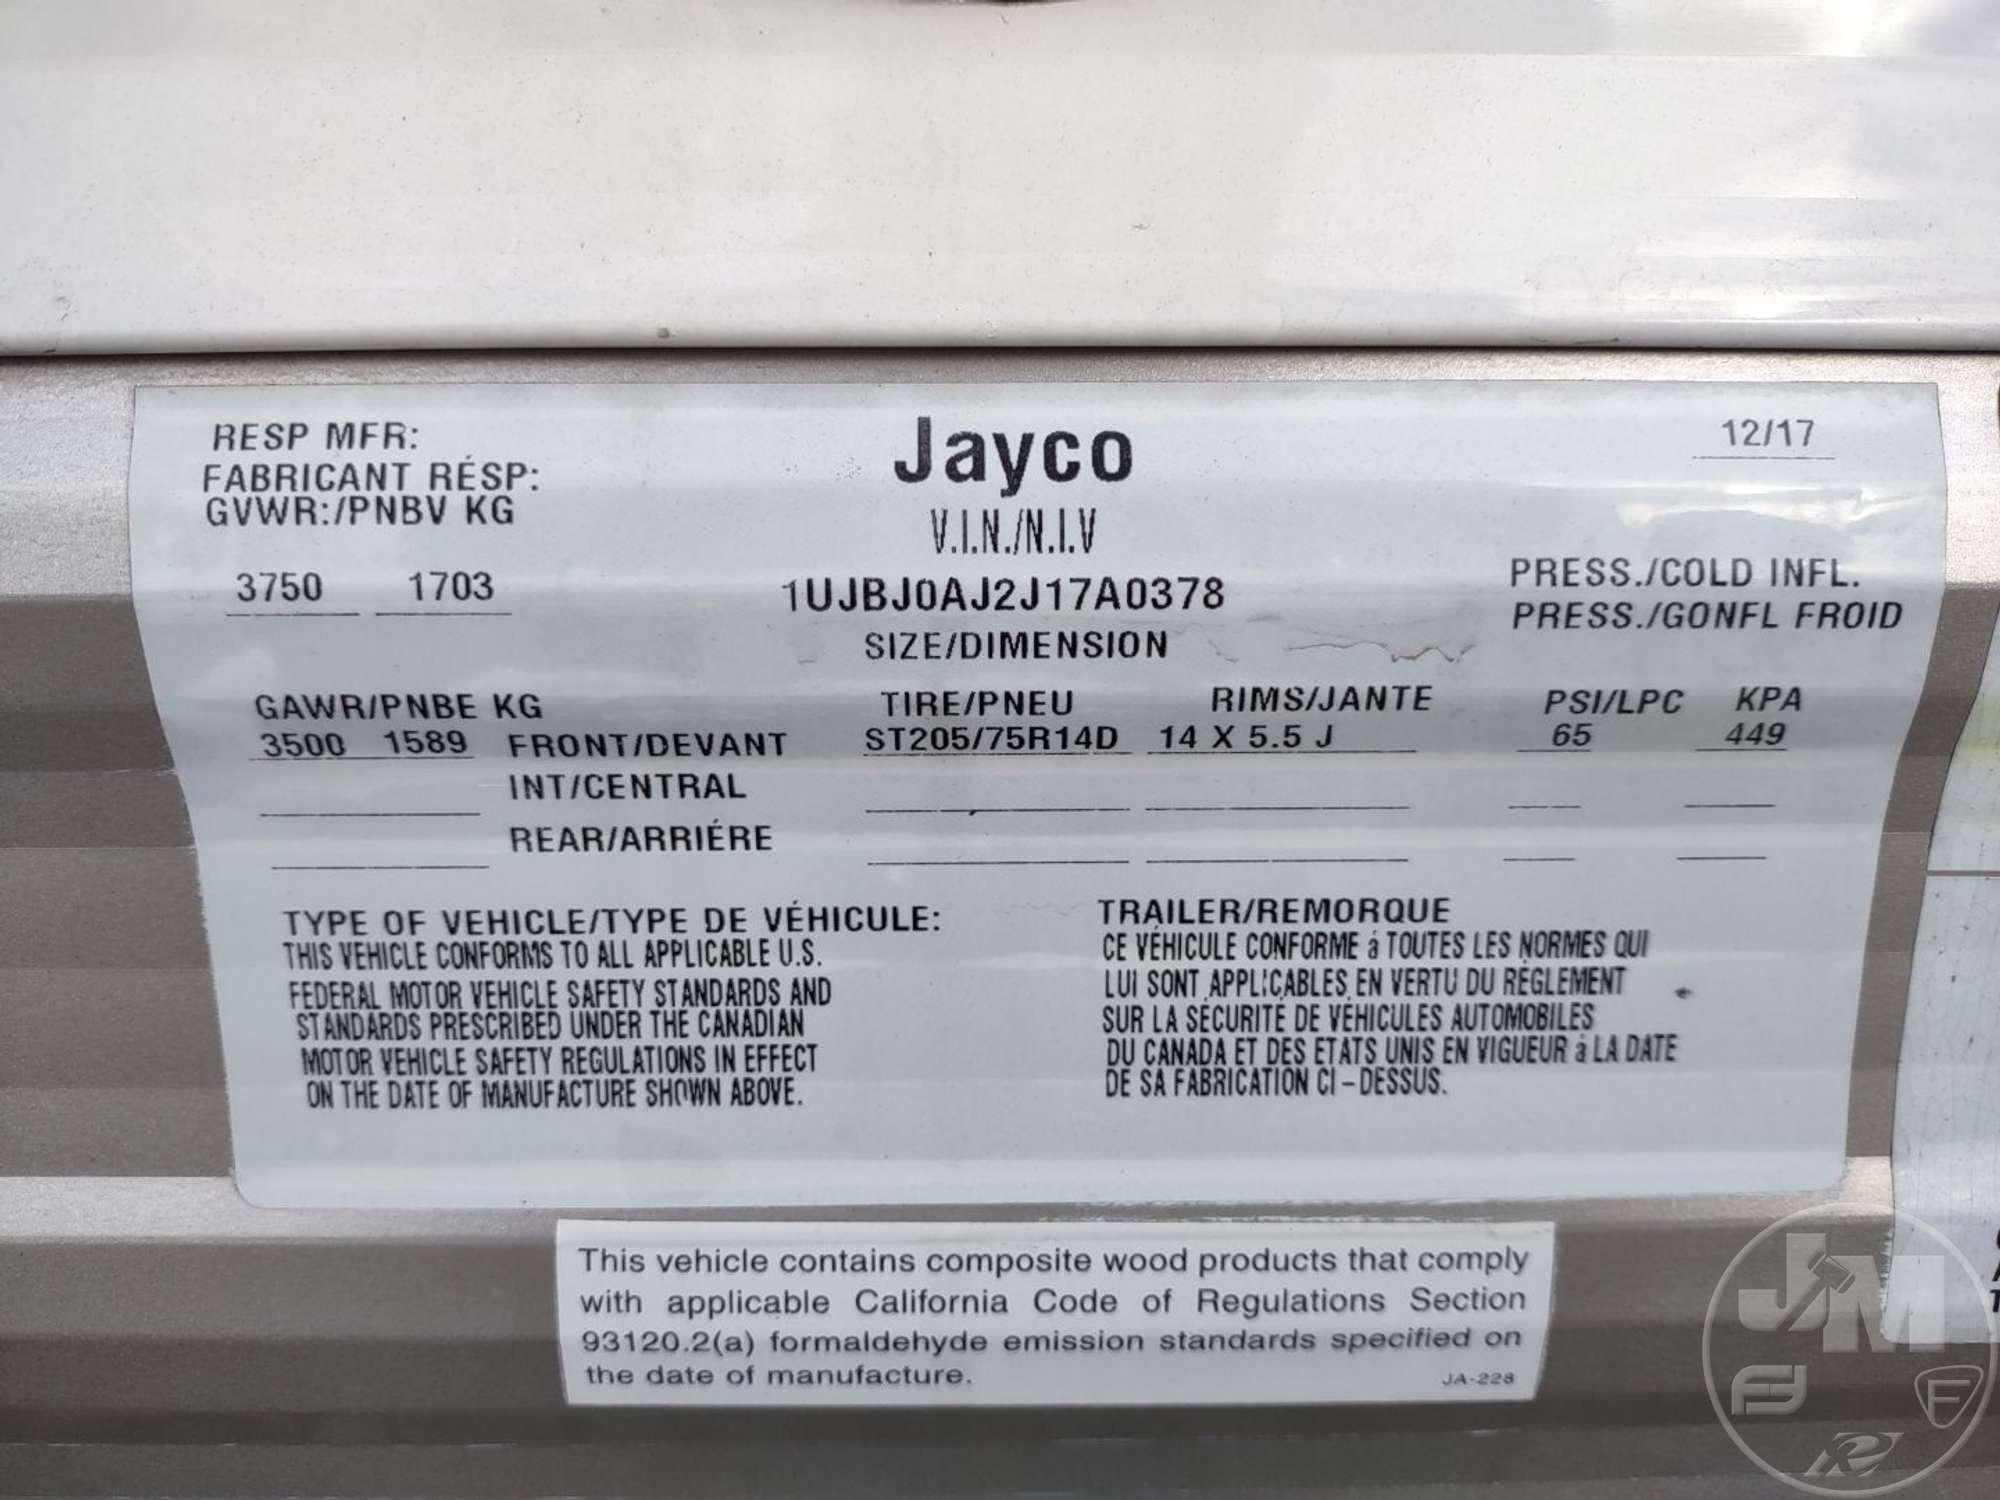 2018 JAYCO JAYFLIGHT SLX 7 195RB  VIN: 1UJBJ0AJ2J17A0378 BUMPER PULL CAMPER